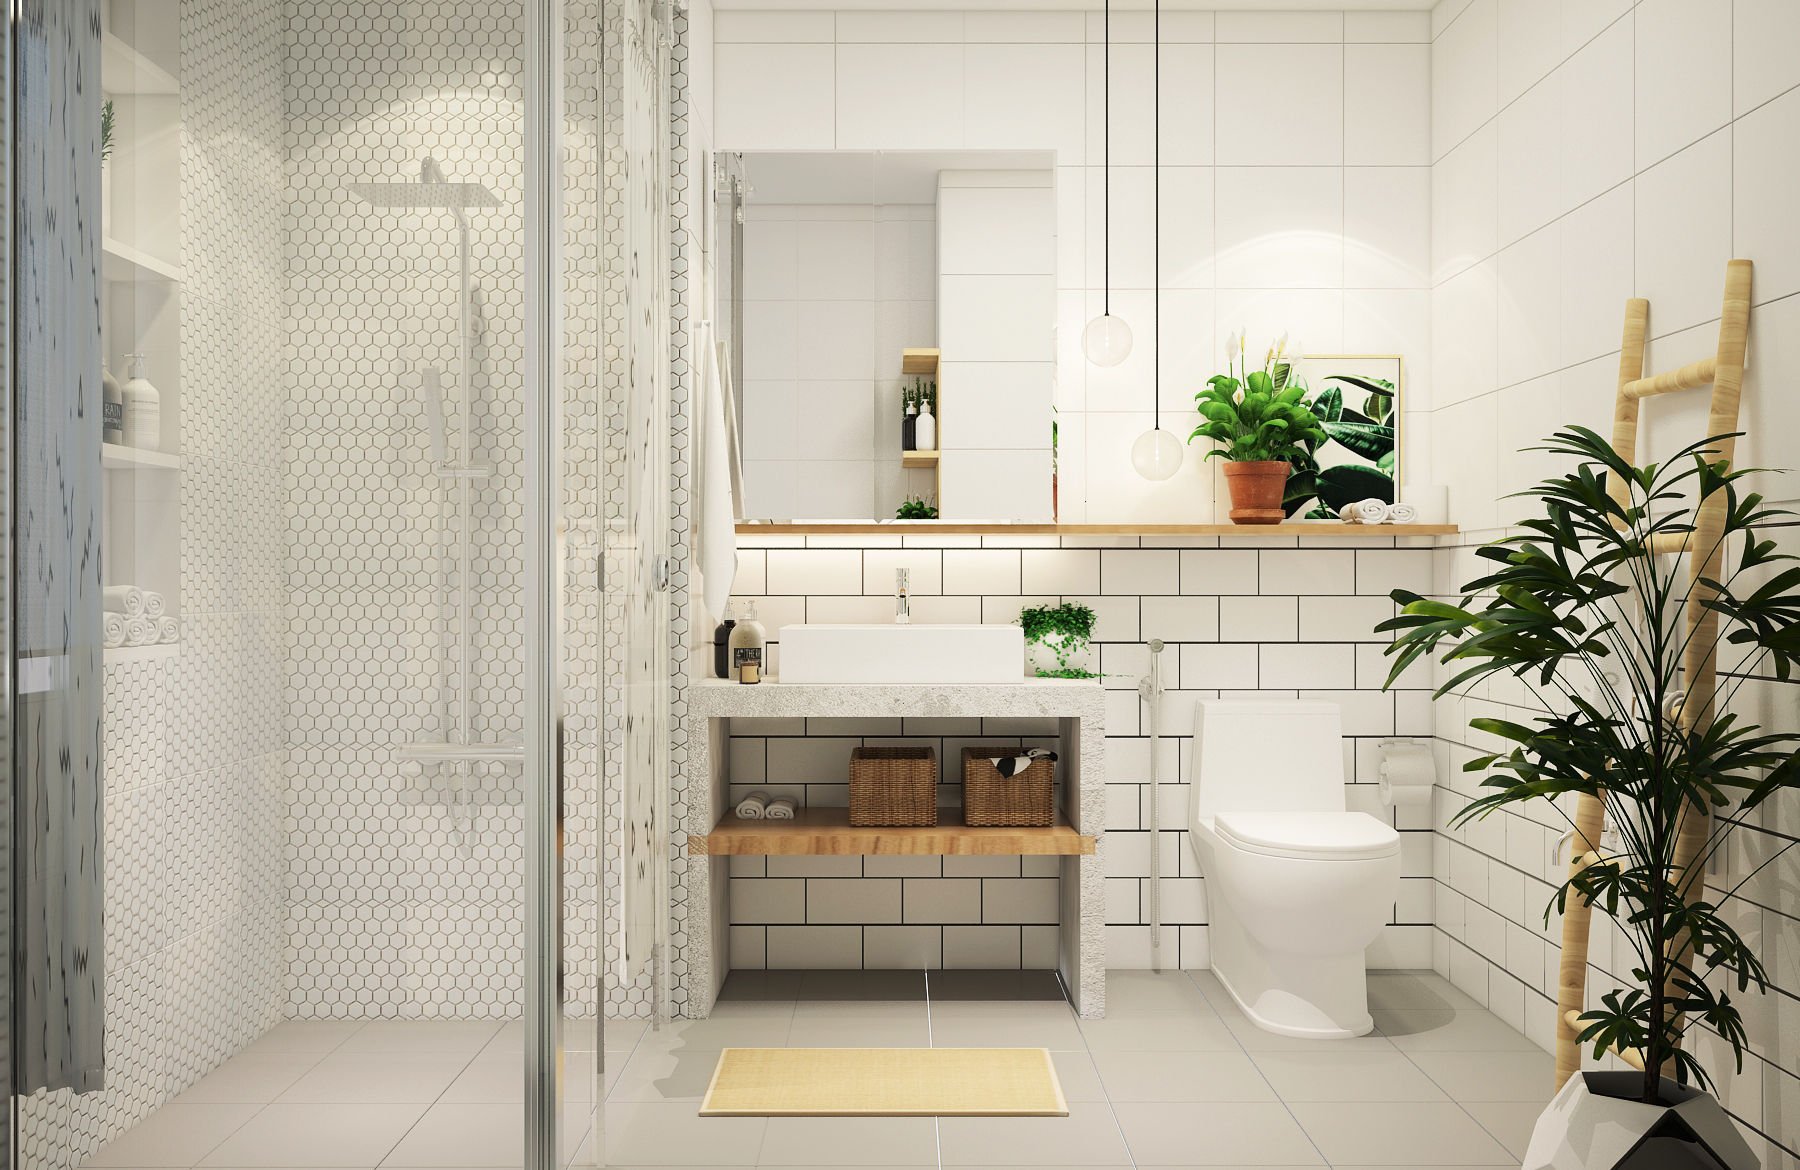 Với các sản phẩm chống thấm, việc xây dựng phòng tắm của bạn nay đã trở nên dễ dàng và an toàn. Xem các hình ảnh để tìm hiểu về những sản phẩm chống thấm phổ biến nhất trong thiết kế phòng tắm, giúp bảo vệ ngôi nhà bạn khỏi những hư hỏng do nước gây ra.